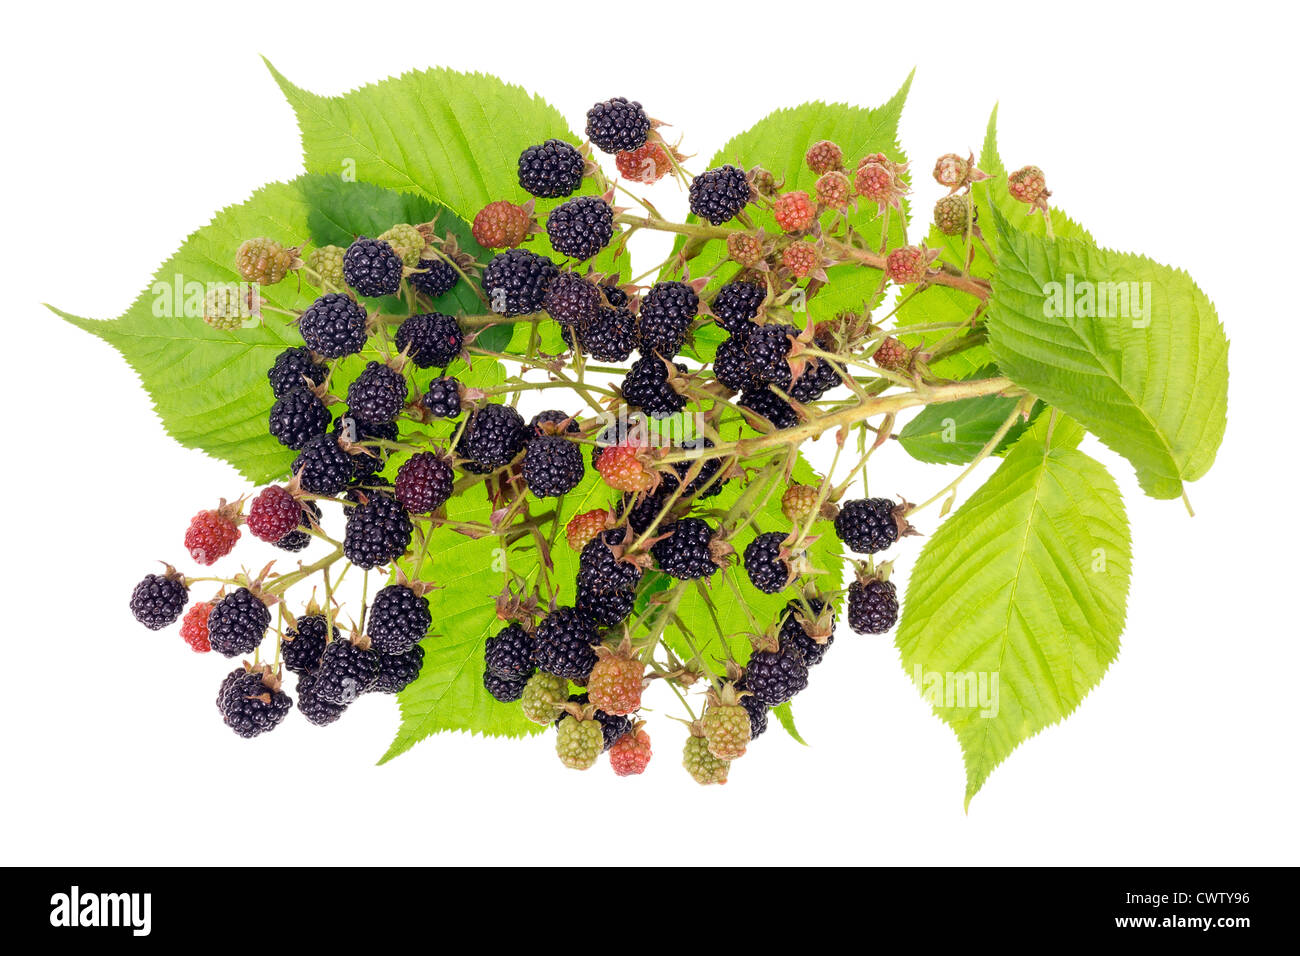 Les mûres berry concept bush avec des fruits et des feuilles. Isolé Banque D'Images